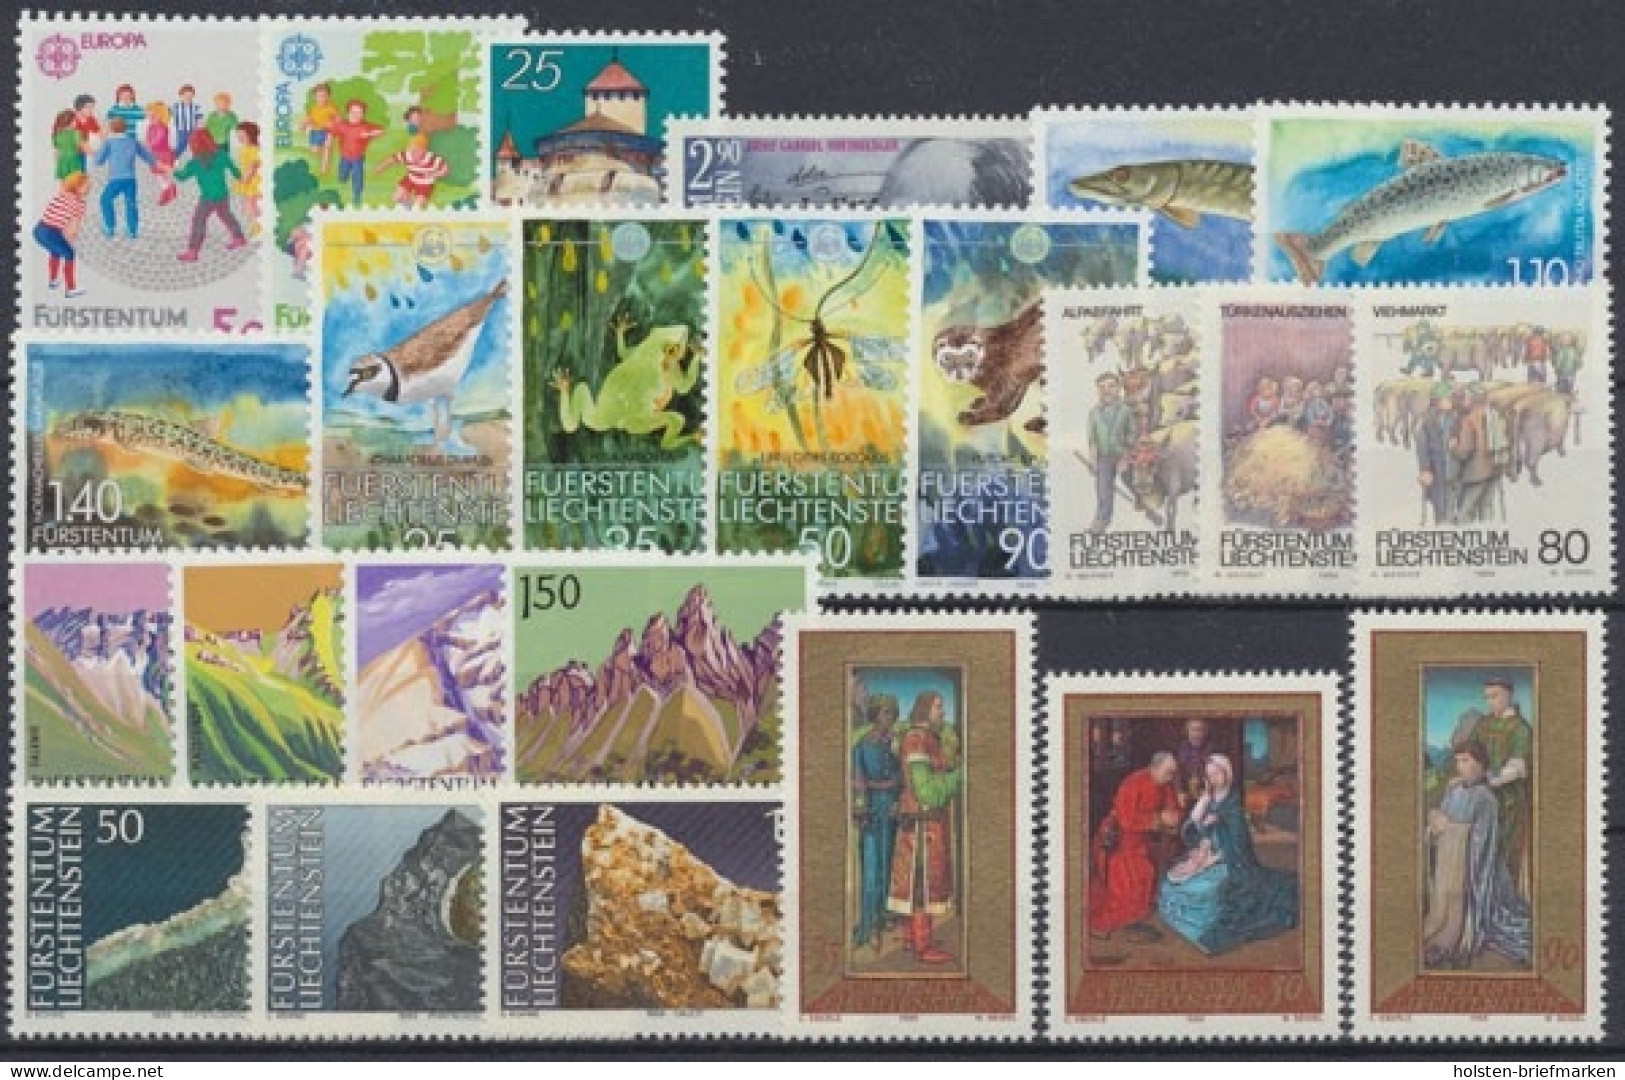 Liechtenstein, MiNr. 960-983, Jahrgang 1989, Postfrisch - Volledige Jaargang